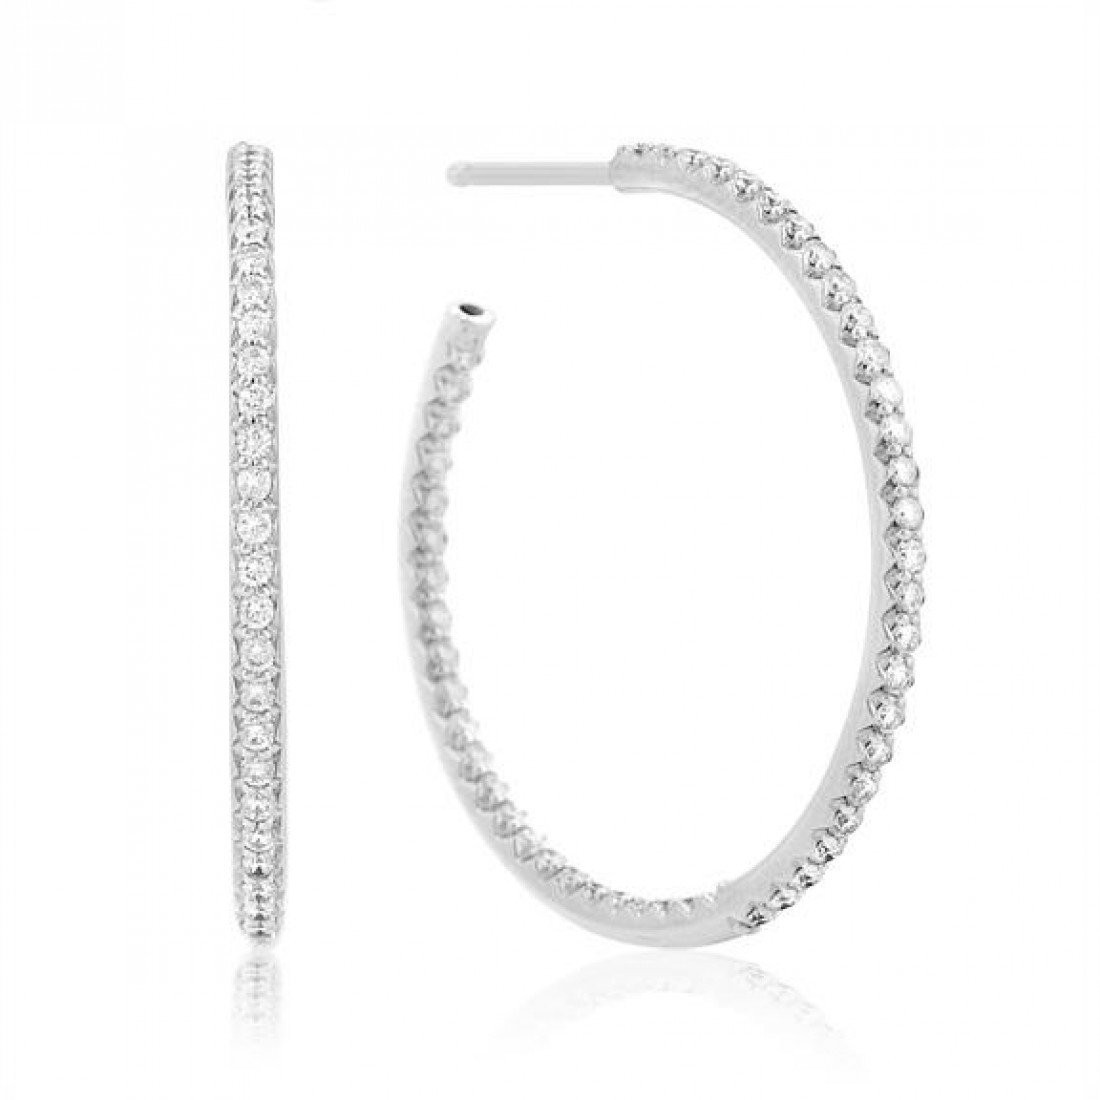 Large Diamond Hoop Earrings
 Roberto Coin 18KWG Inside Outside Diamond Hoop Earrings